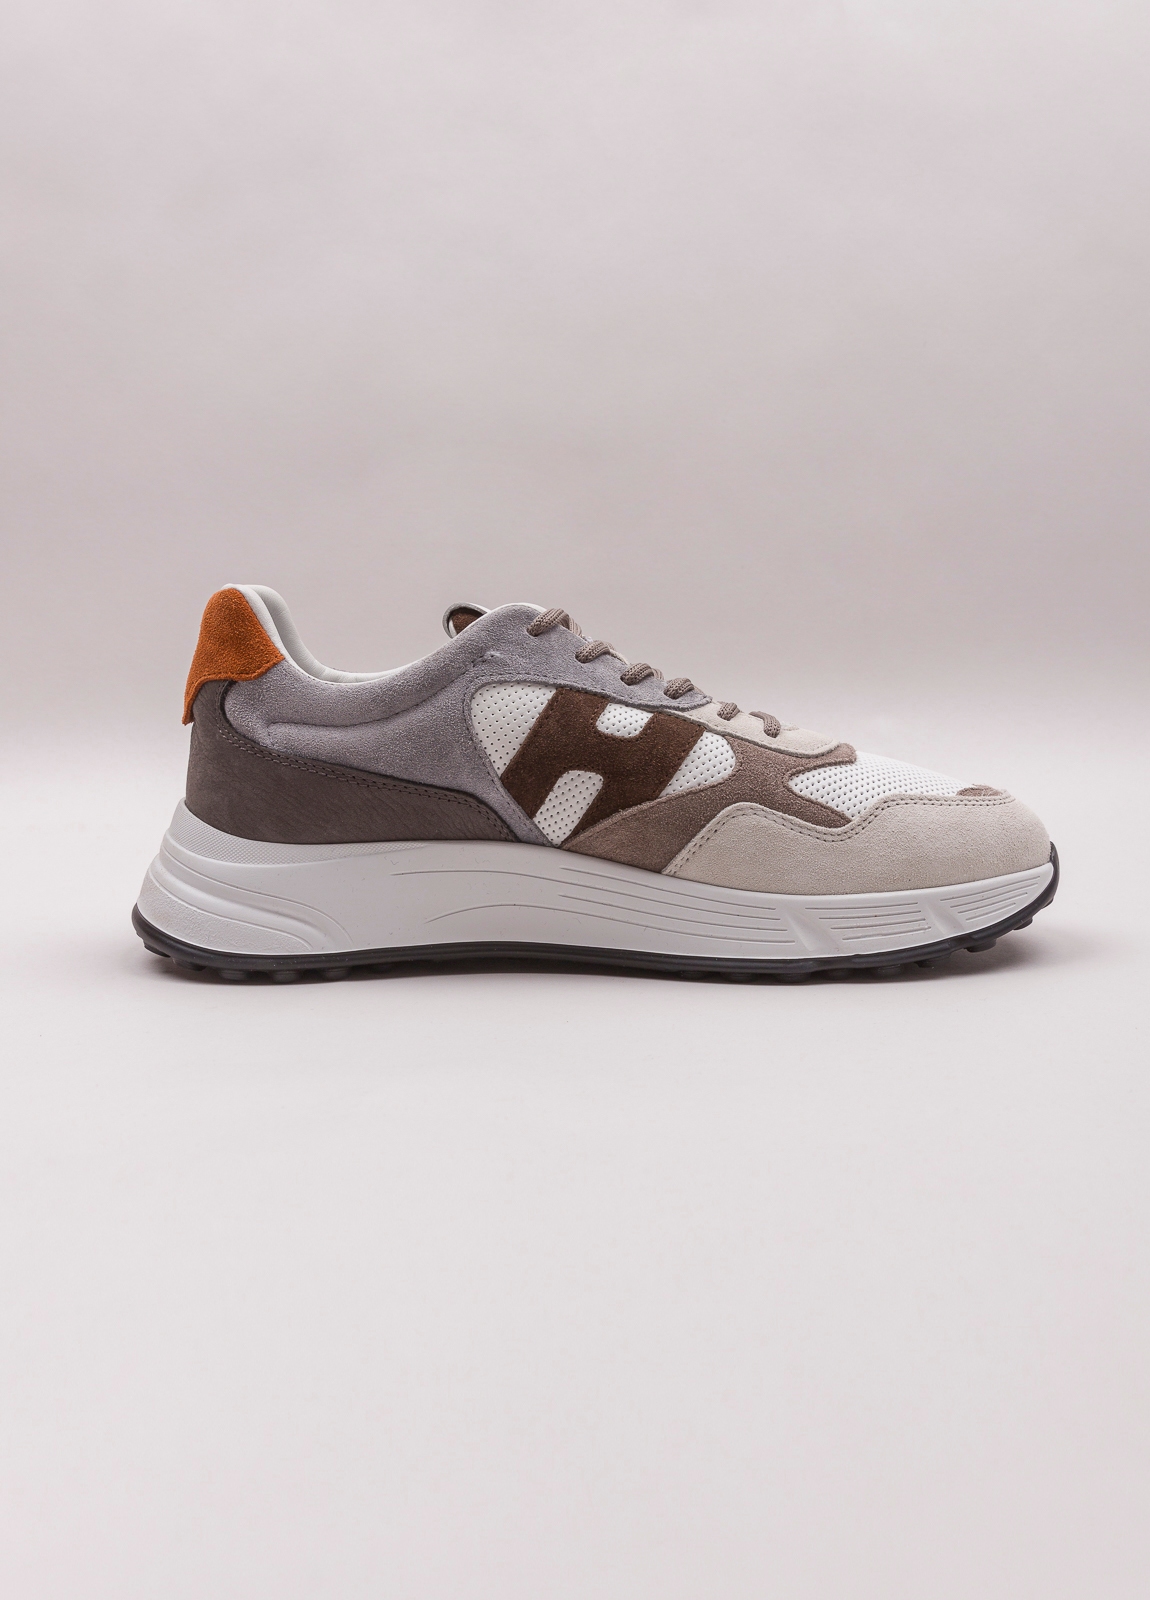 Zapatillas deportivas HOGAN blanco, gris y marrón - Ítem3